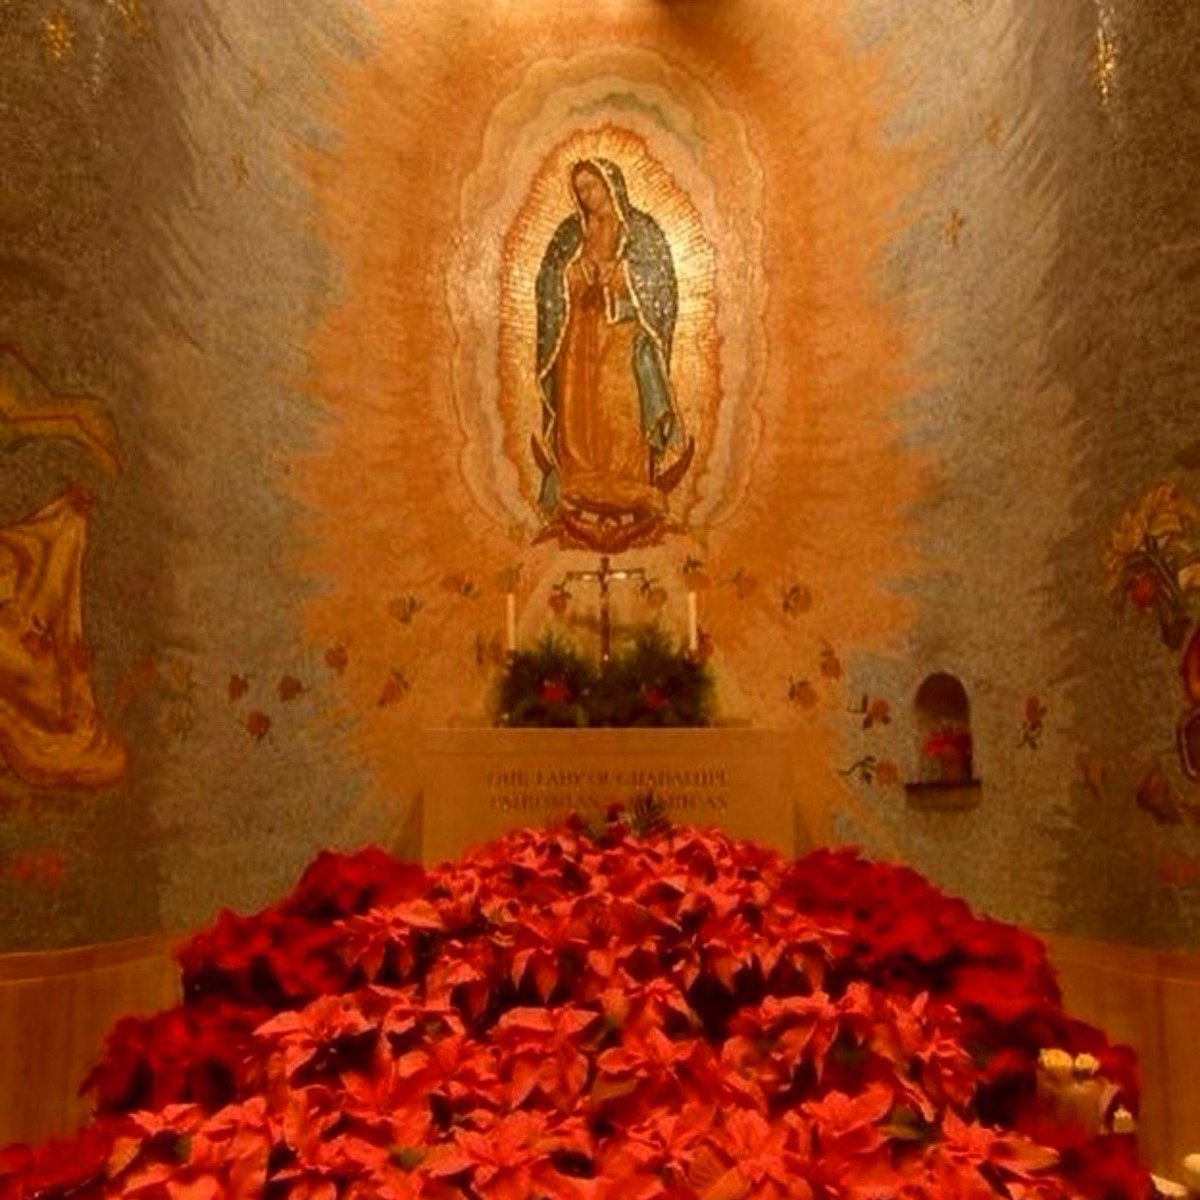 Sábado, de la mano de María. #VirgenDeGuadalupe #VirginMary #VirgenMaría